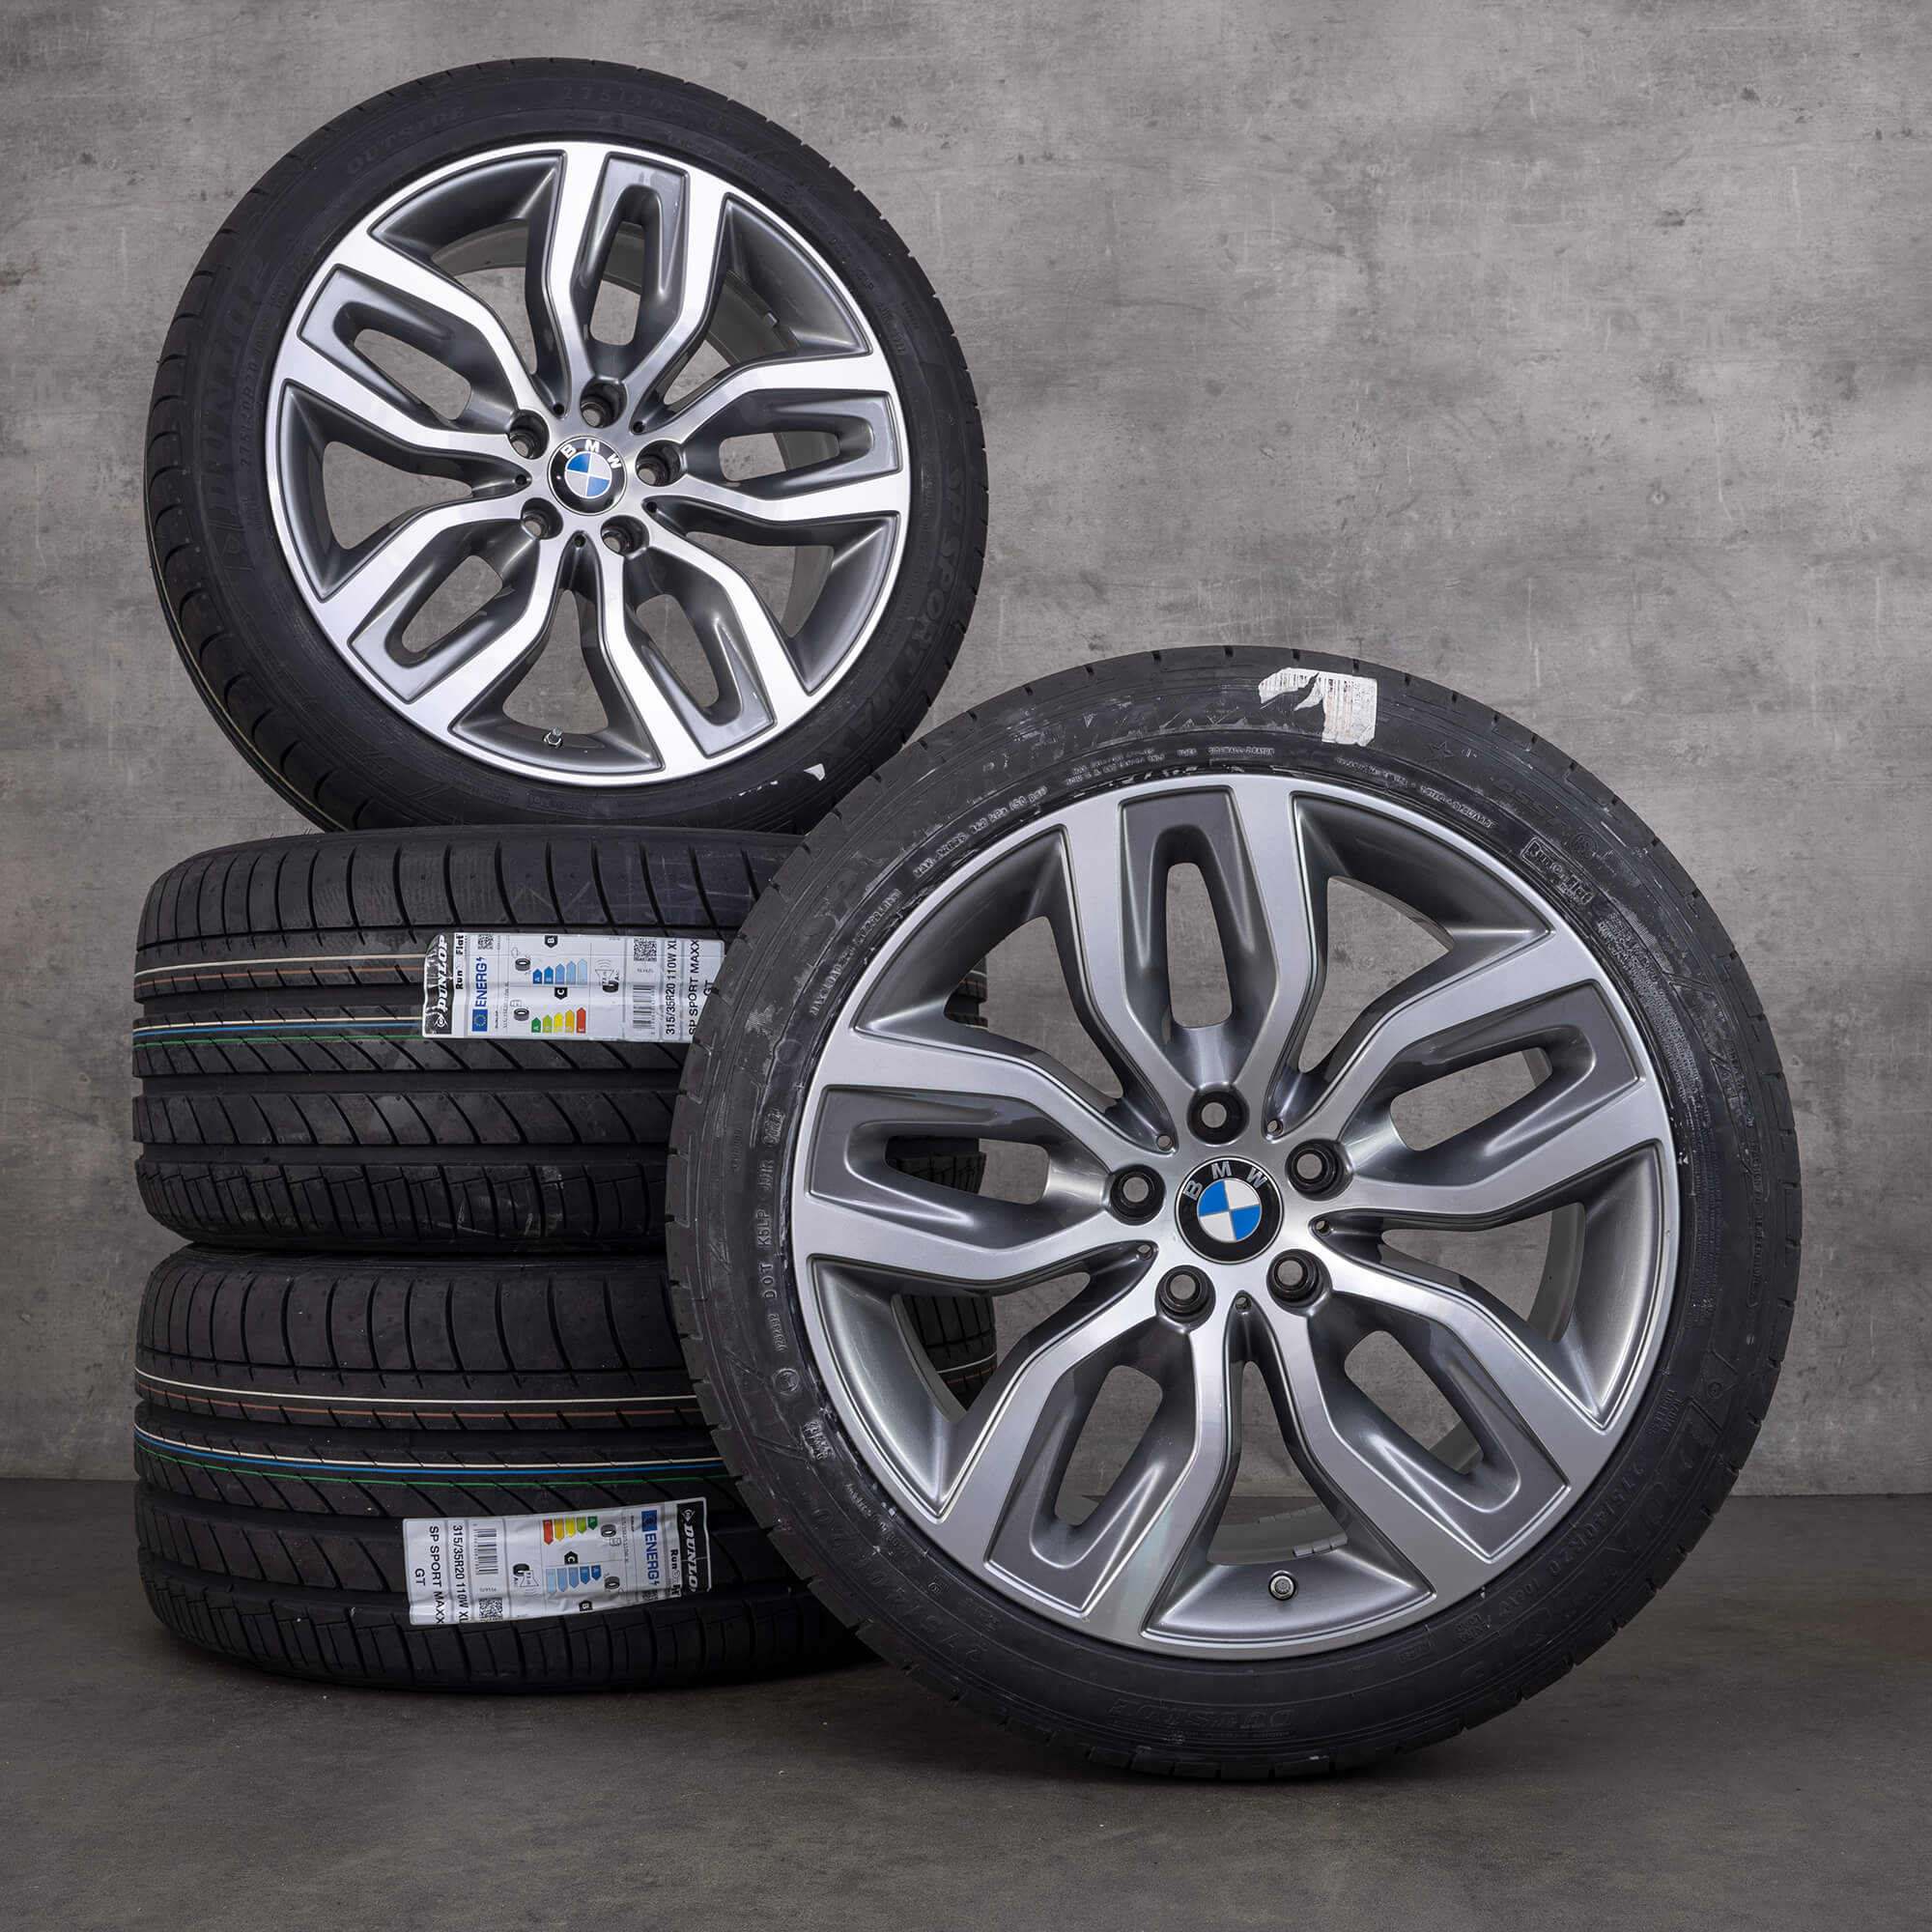 BMW X5 E70 F15 X6 F16 jantes pneus de verão rodas 20 polegadas 6788027 6788028